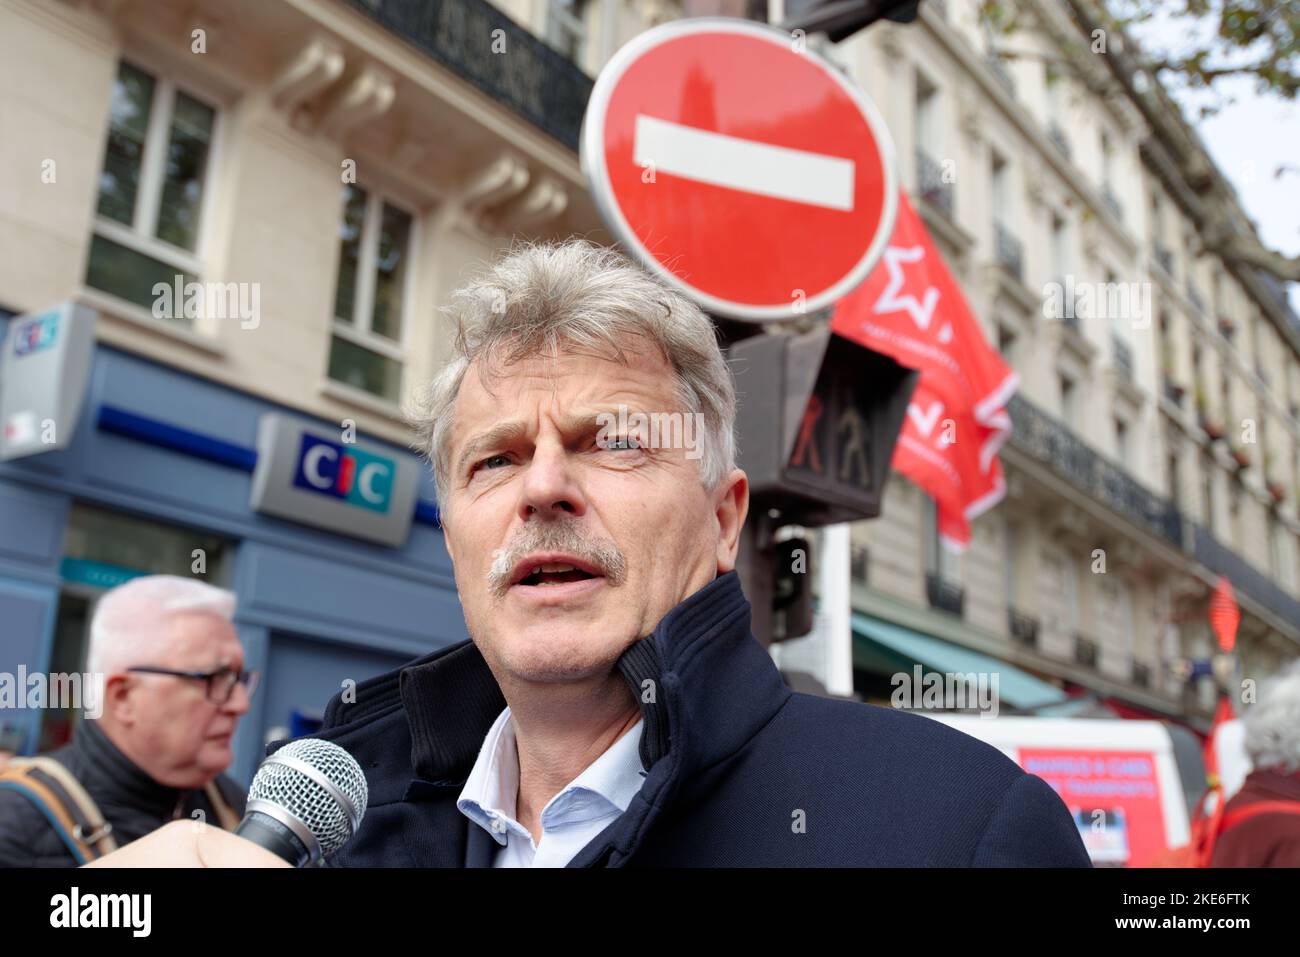 Le député communiste Fabien Roussel répondait aux journalistes et aux manifestants avant le départ de la manifestation interprofessionnelle à Paris Stock Photo